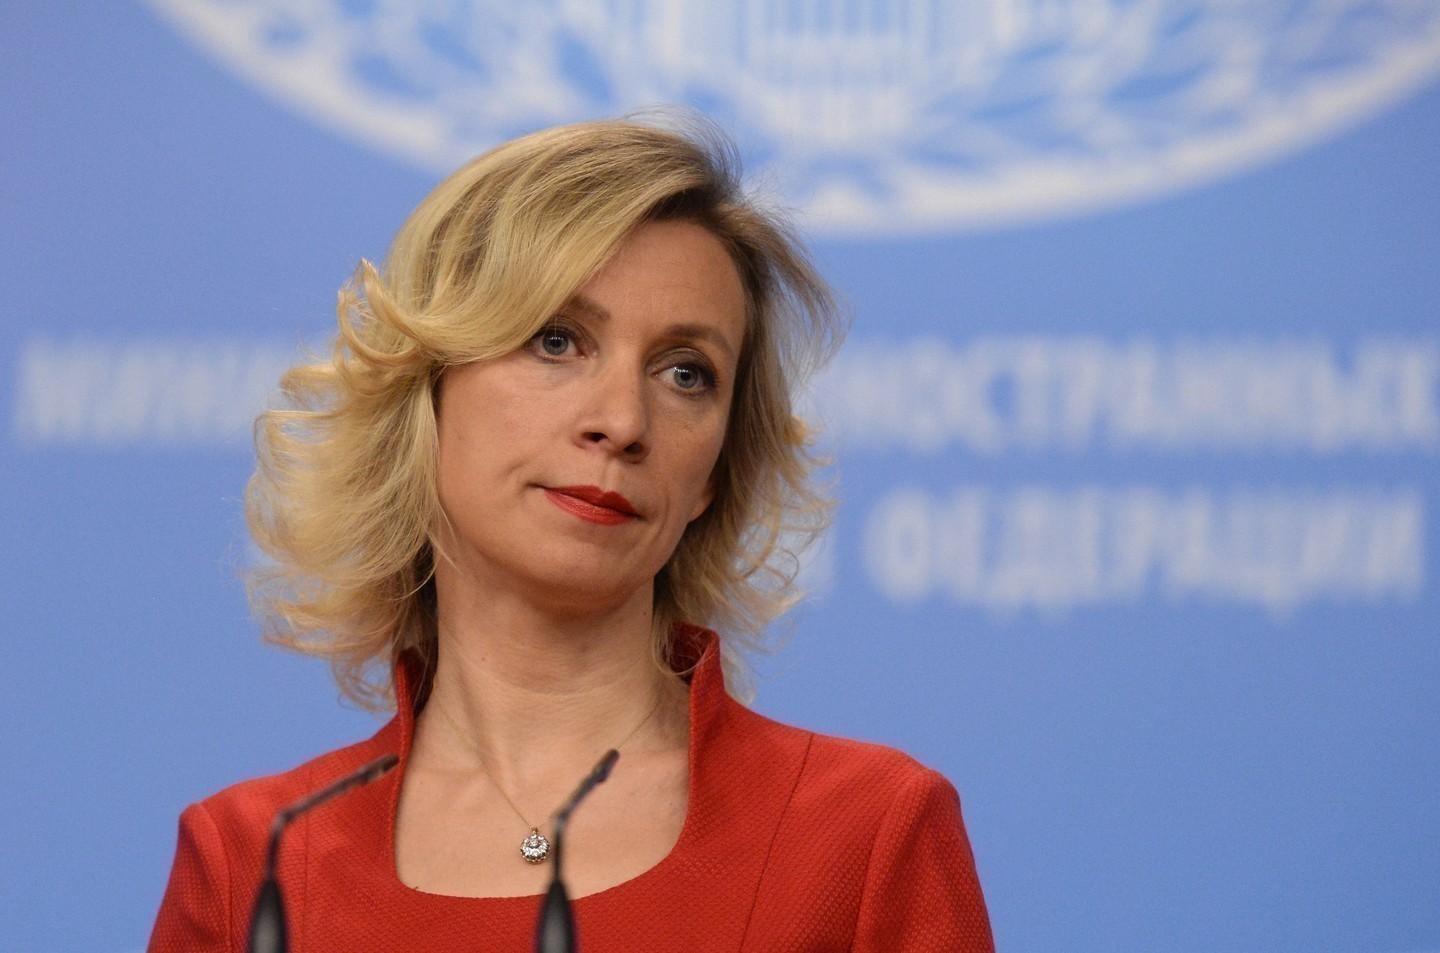 Мария Захарова, официальный представитель МИД РФ